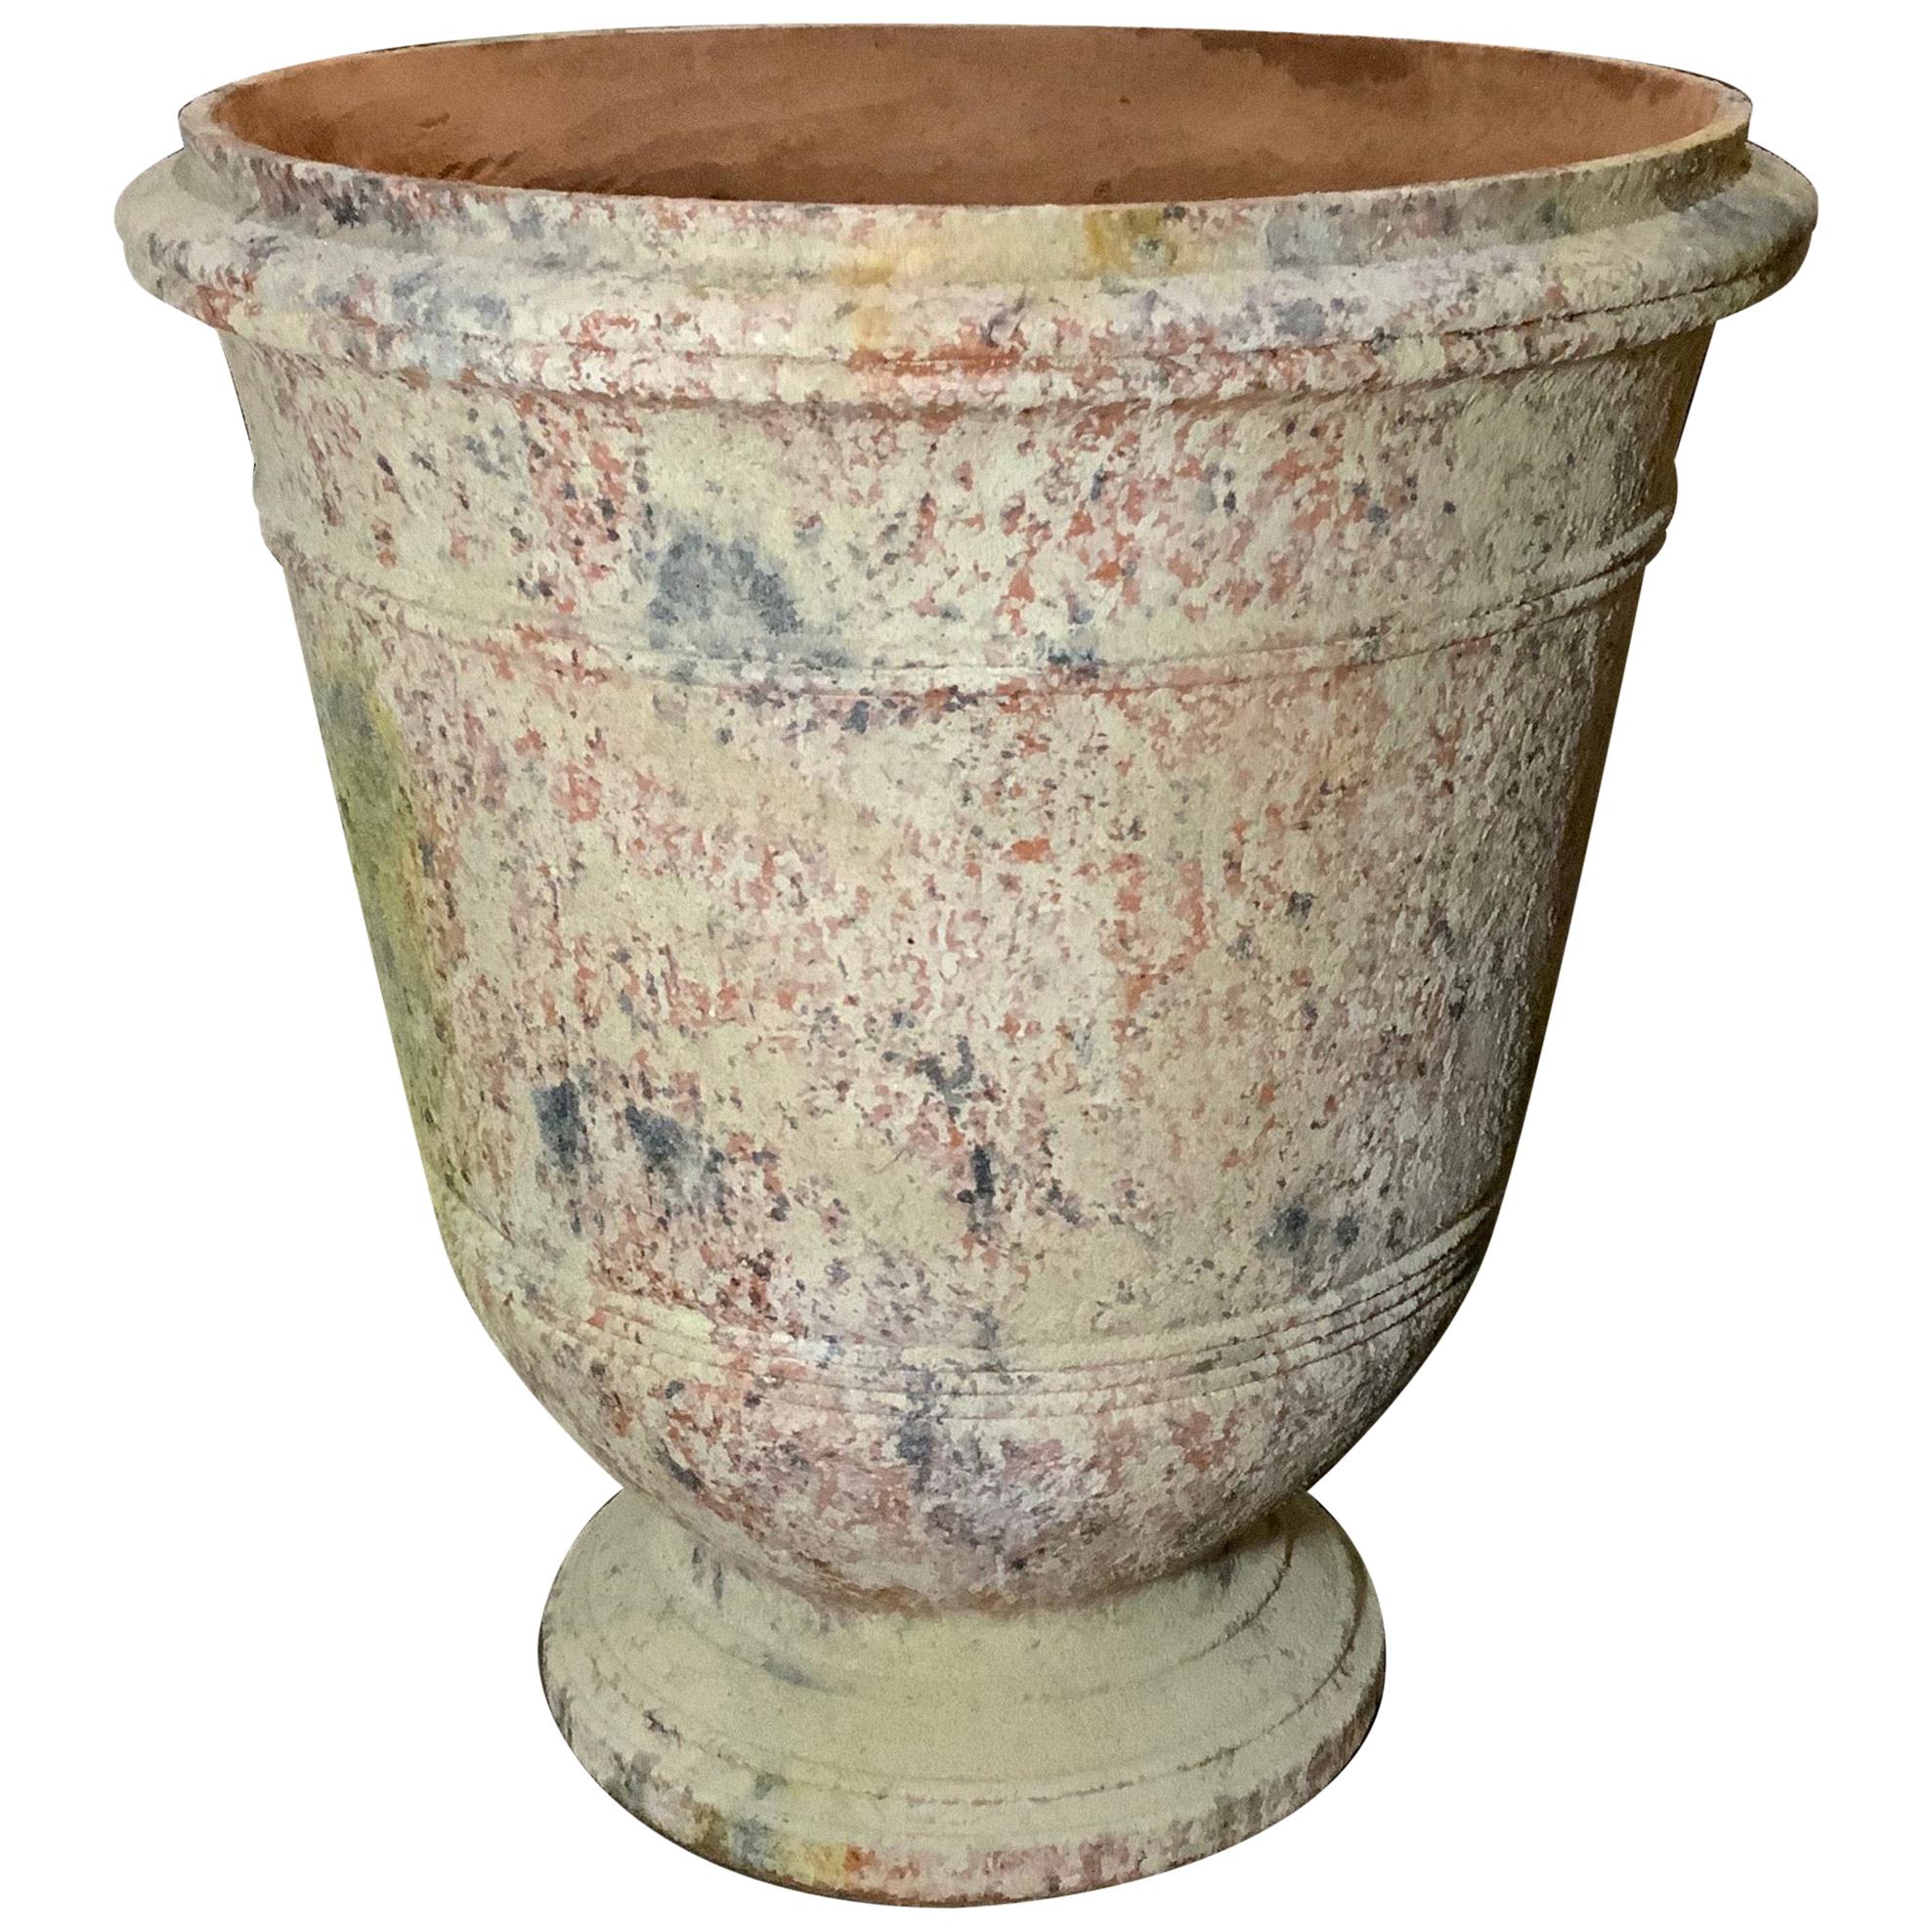 Handgefertigte Terrakotta-Urne aus der Provence